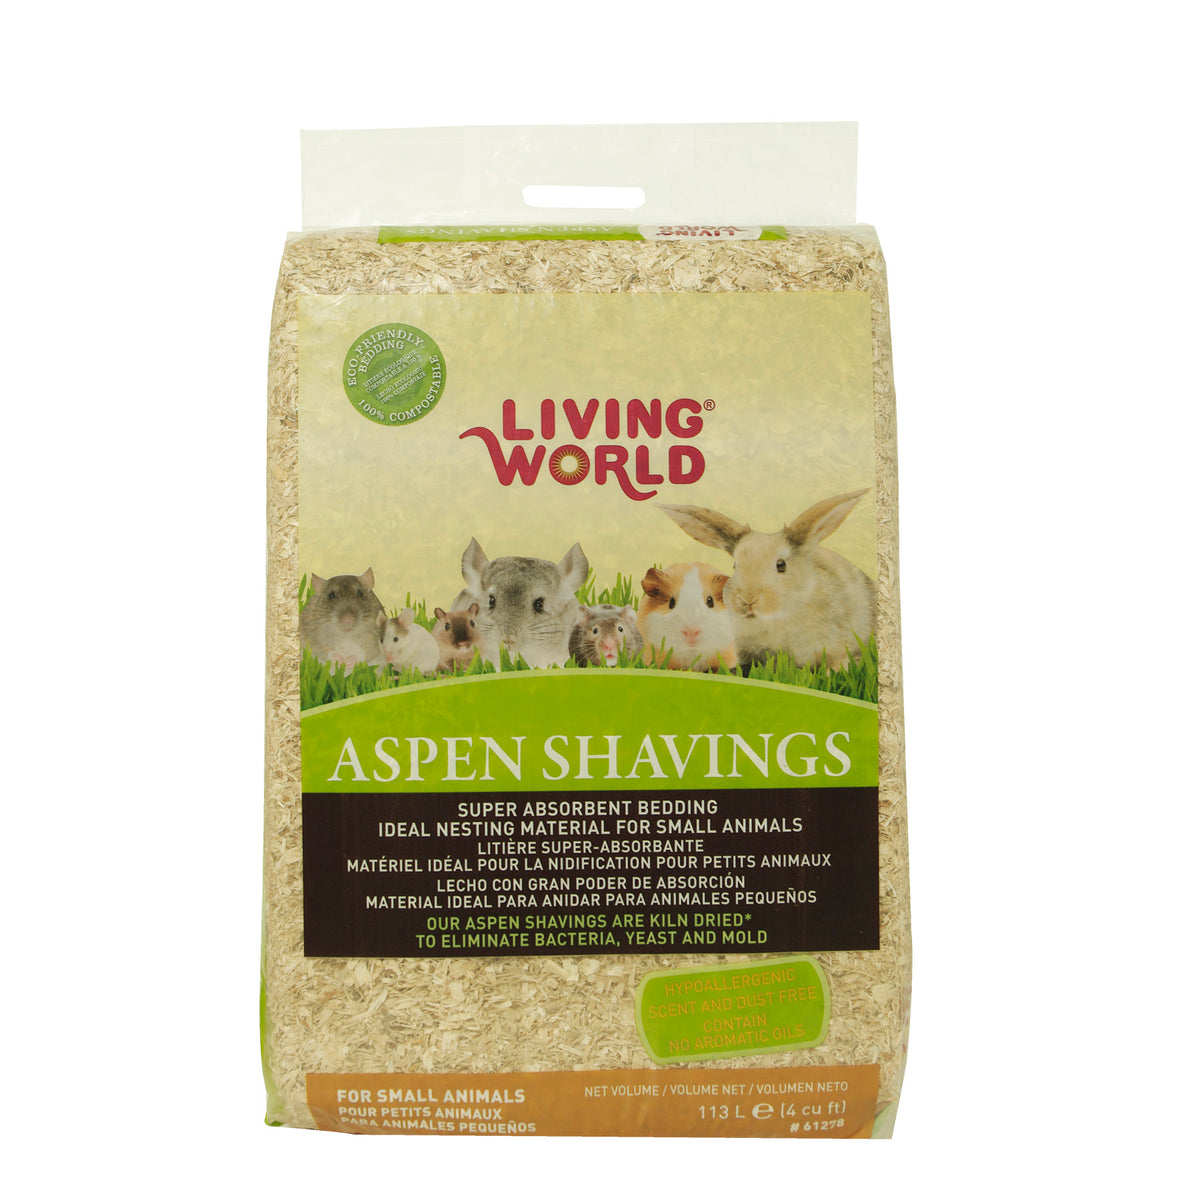 Living World Aspen Shavings